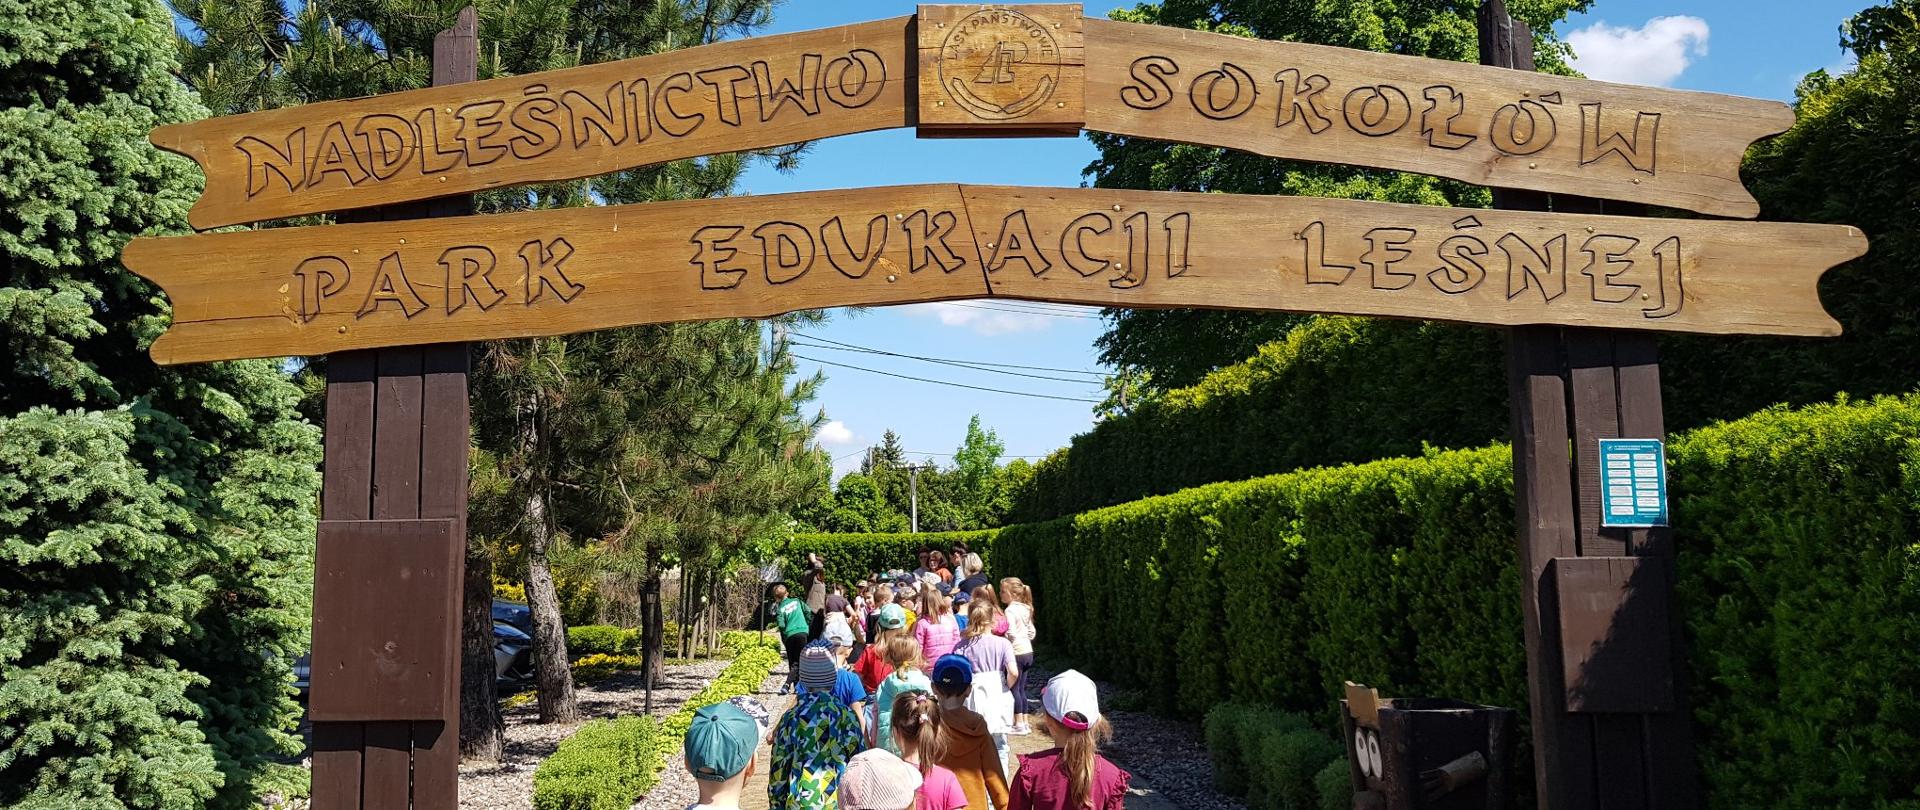 Dzieci wchodzą do Parku Edukacji Leśnej w Nadleśnictwie Sokołów 